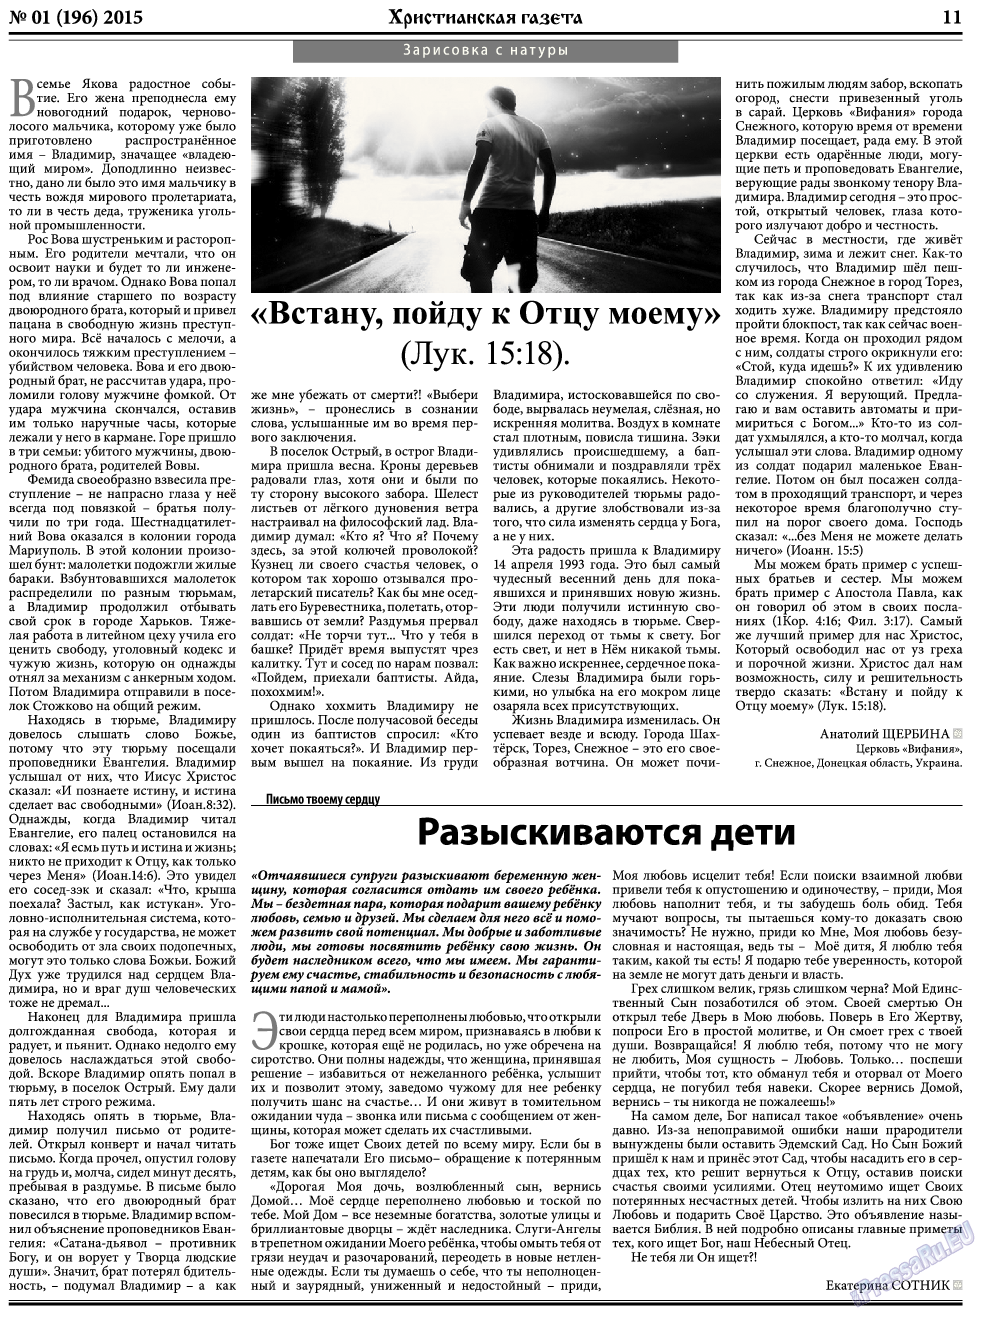 Христианская газета, газета. 2015 №1 стр.11